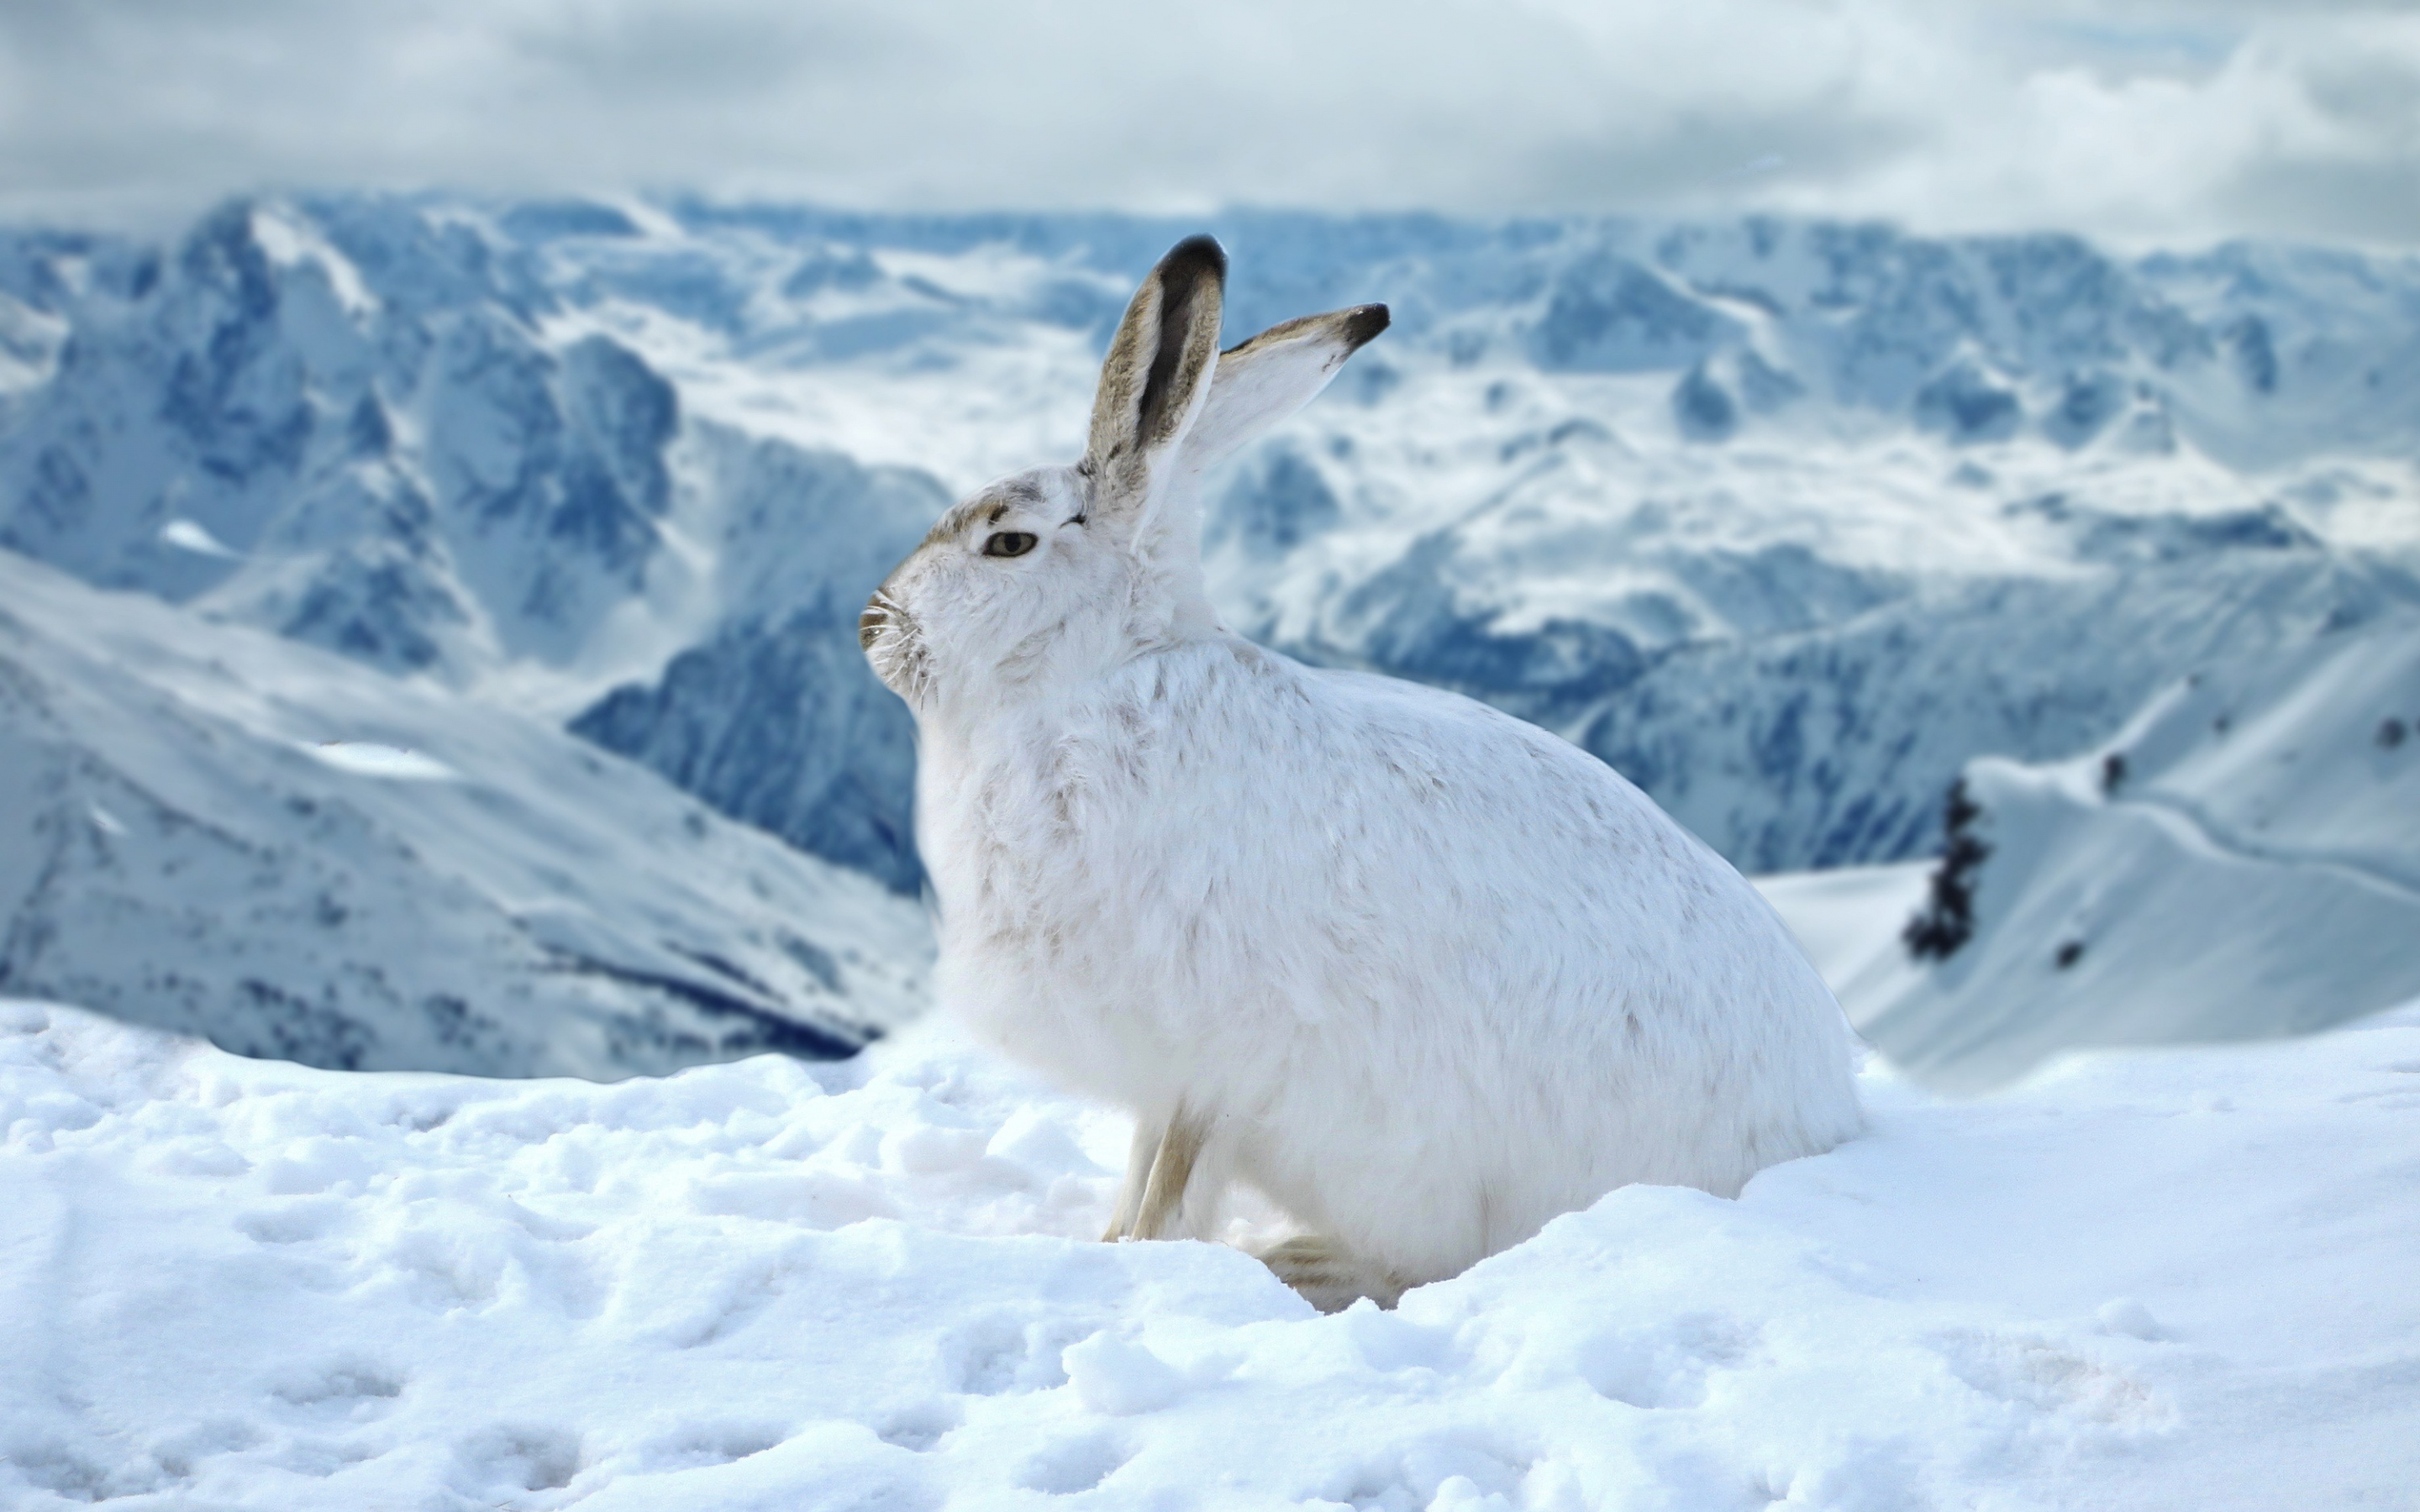 Bunny, rabbit, animal, winter, outdoor, 2880x1800 wallpaper